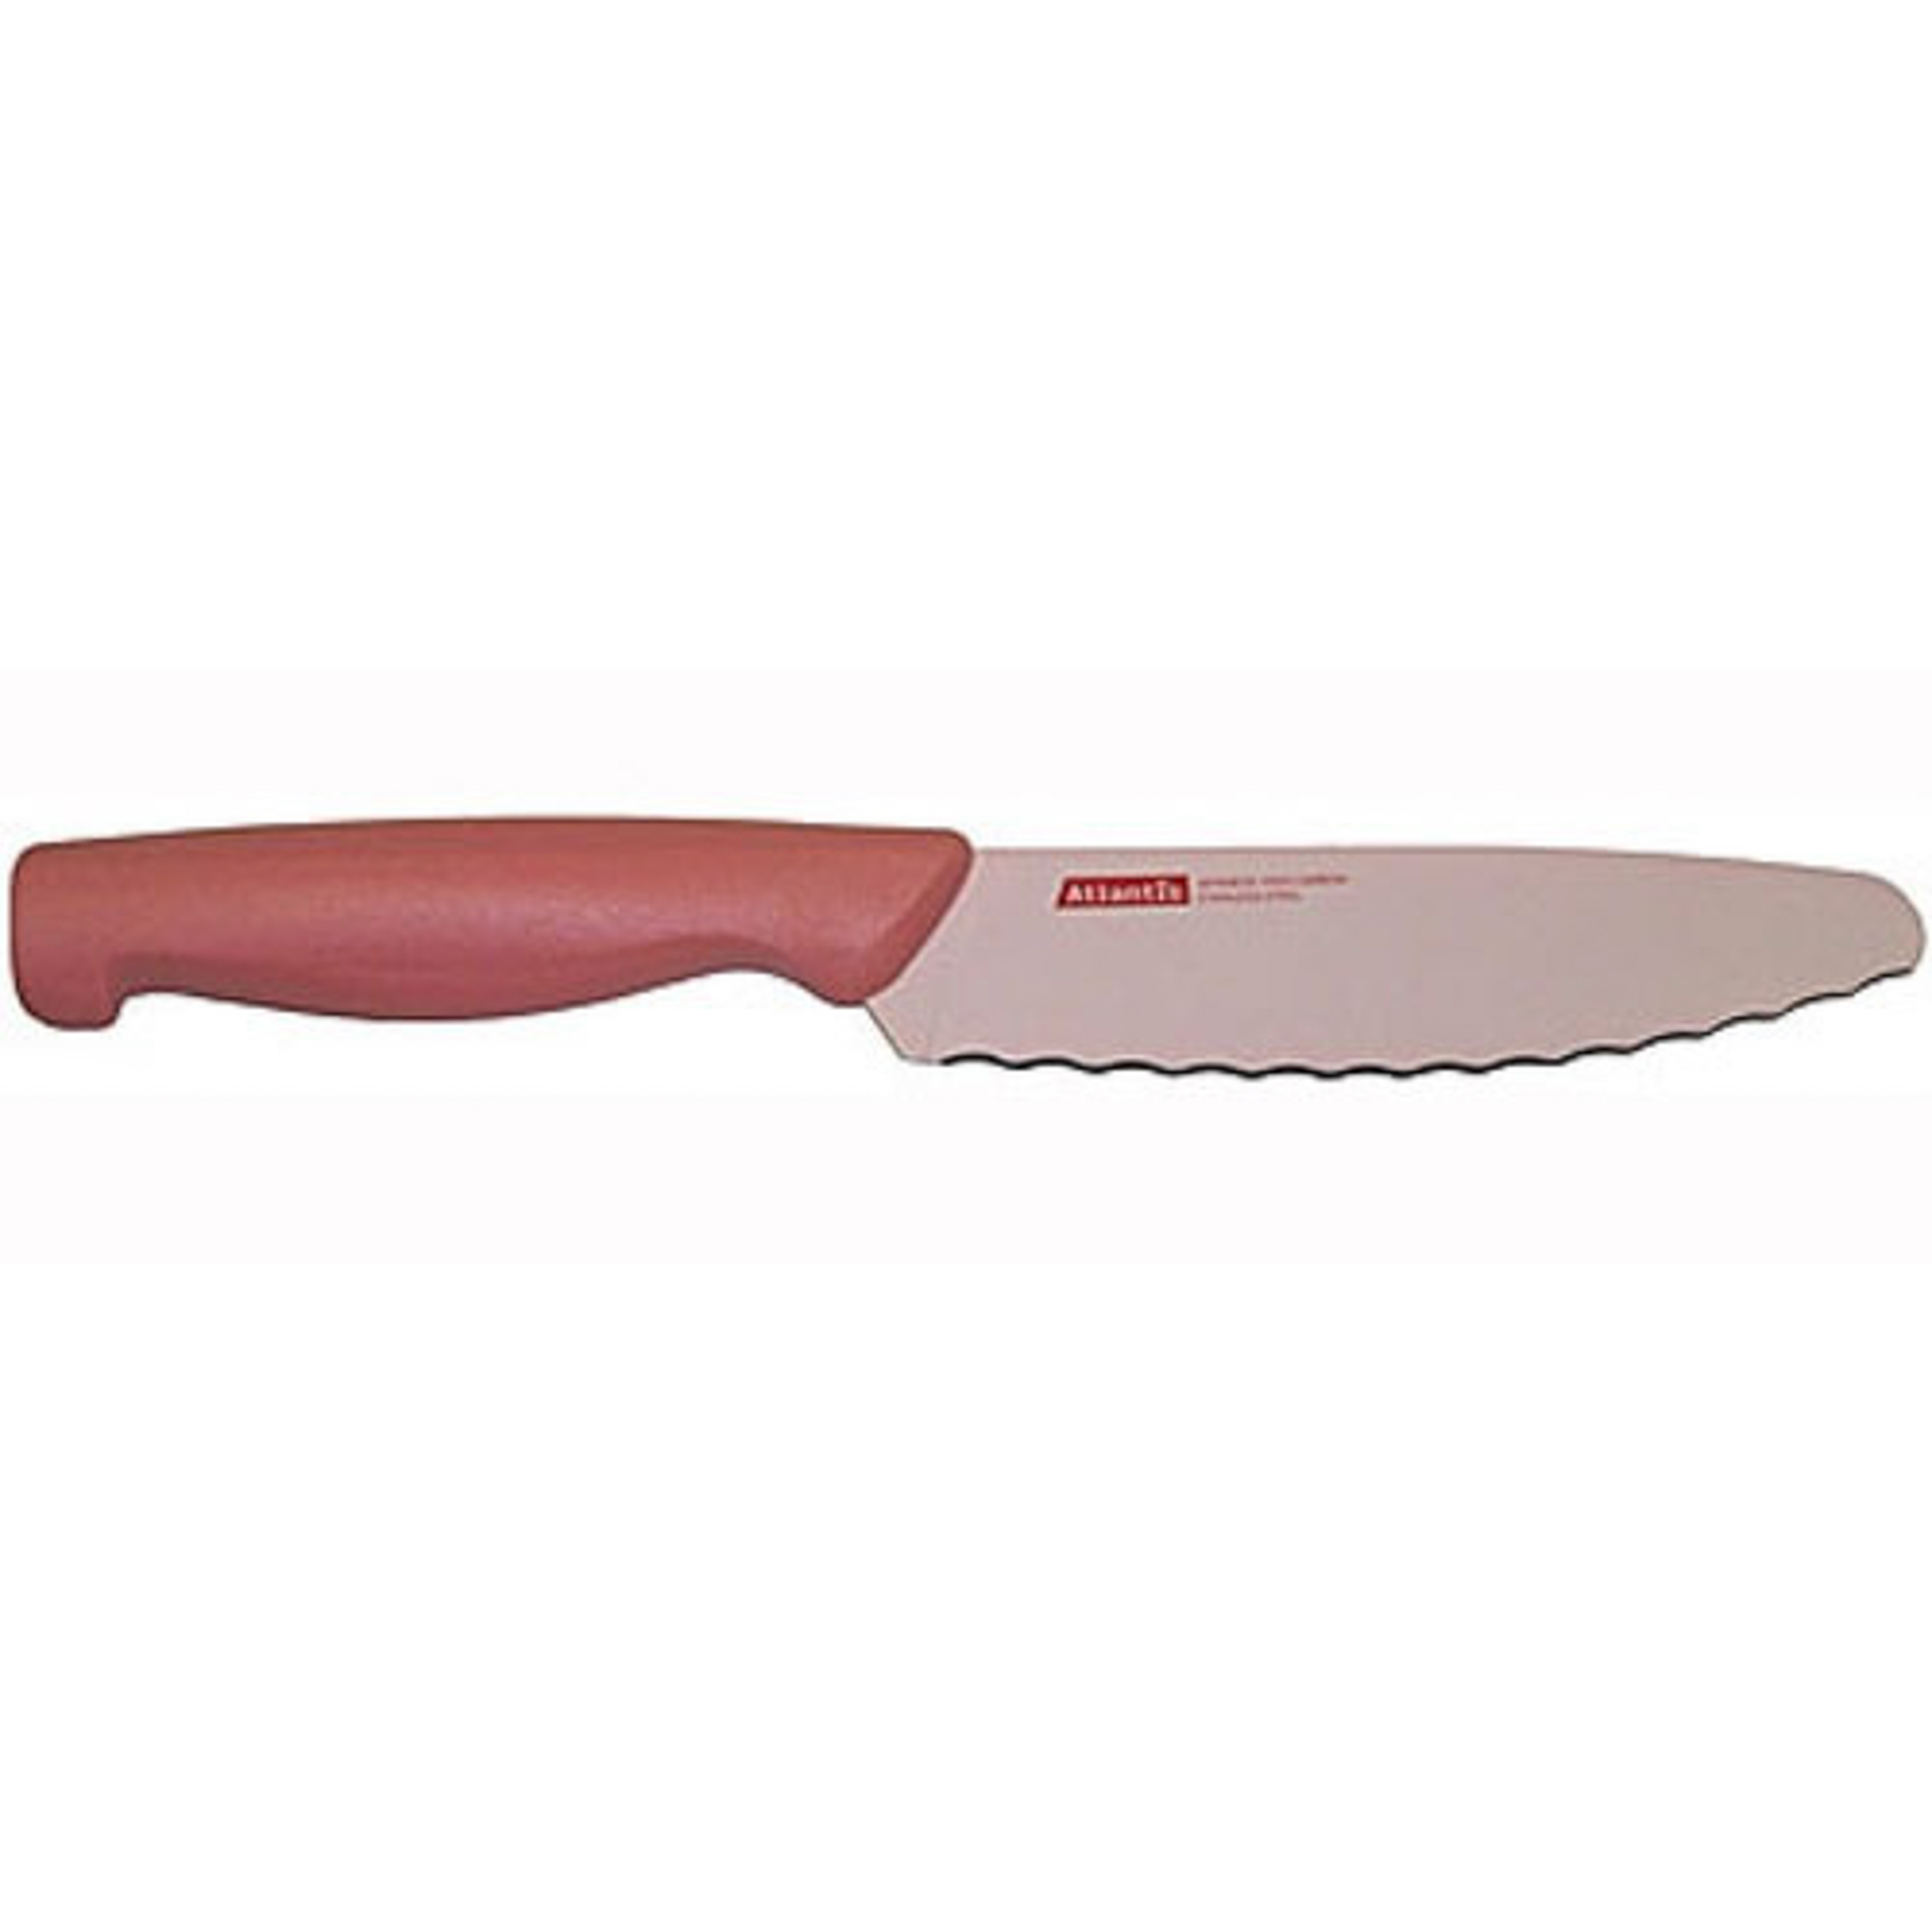 Нож универсальный 15см розовый Atlantis нож atlantis 24407 sk 15см обвалочный